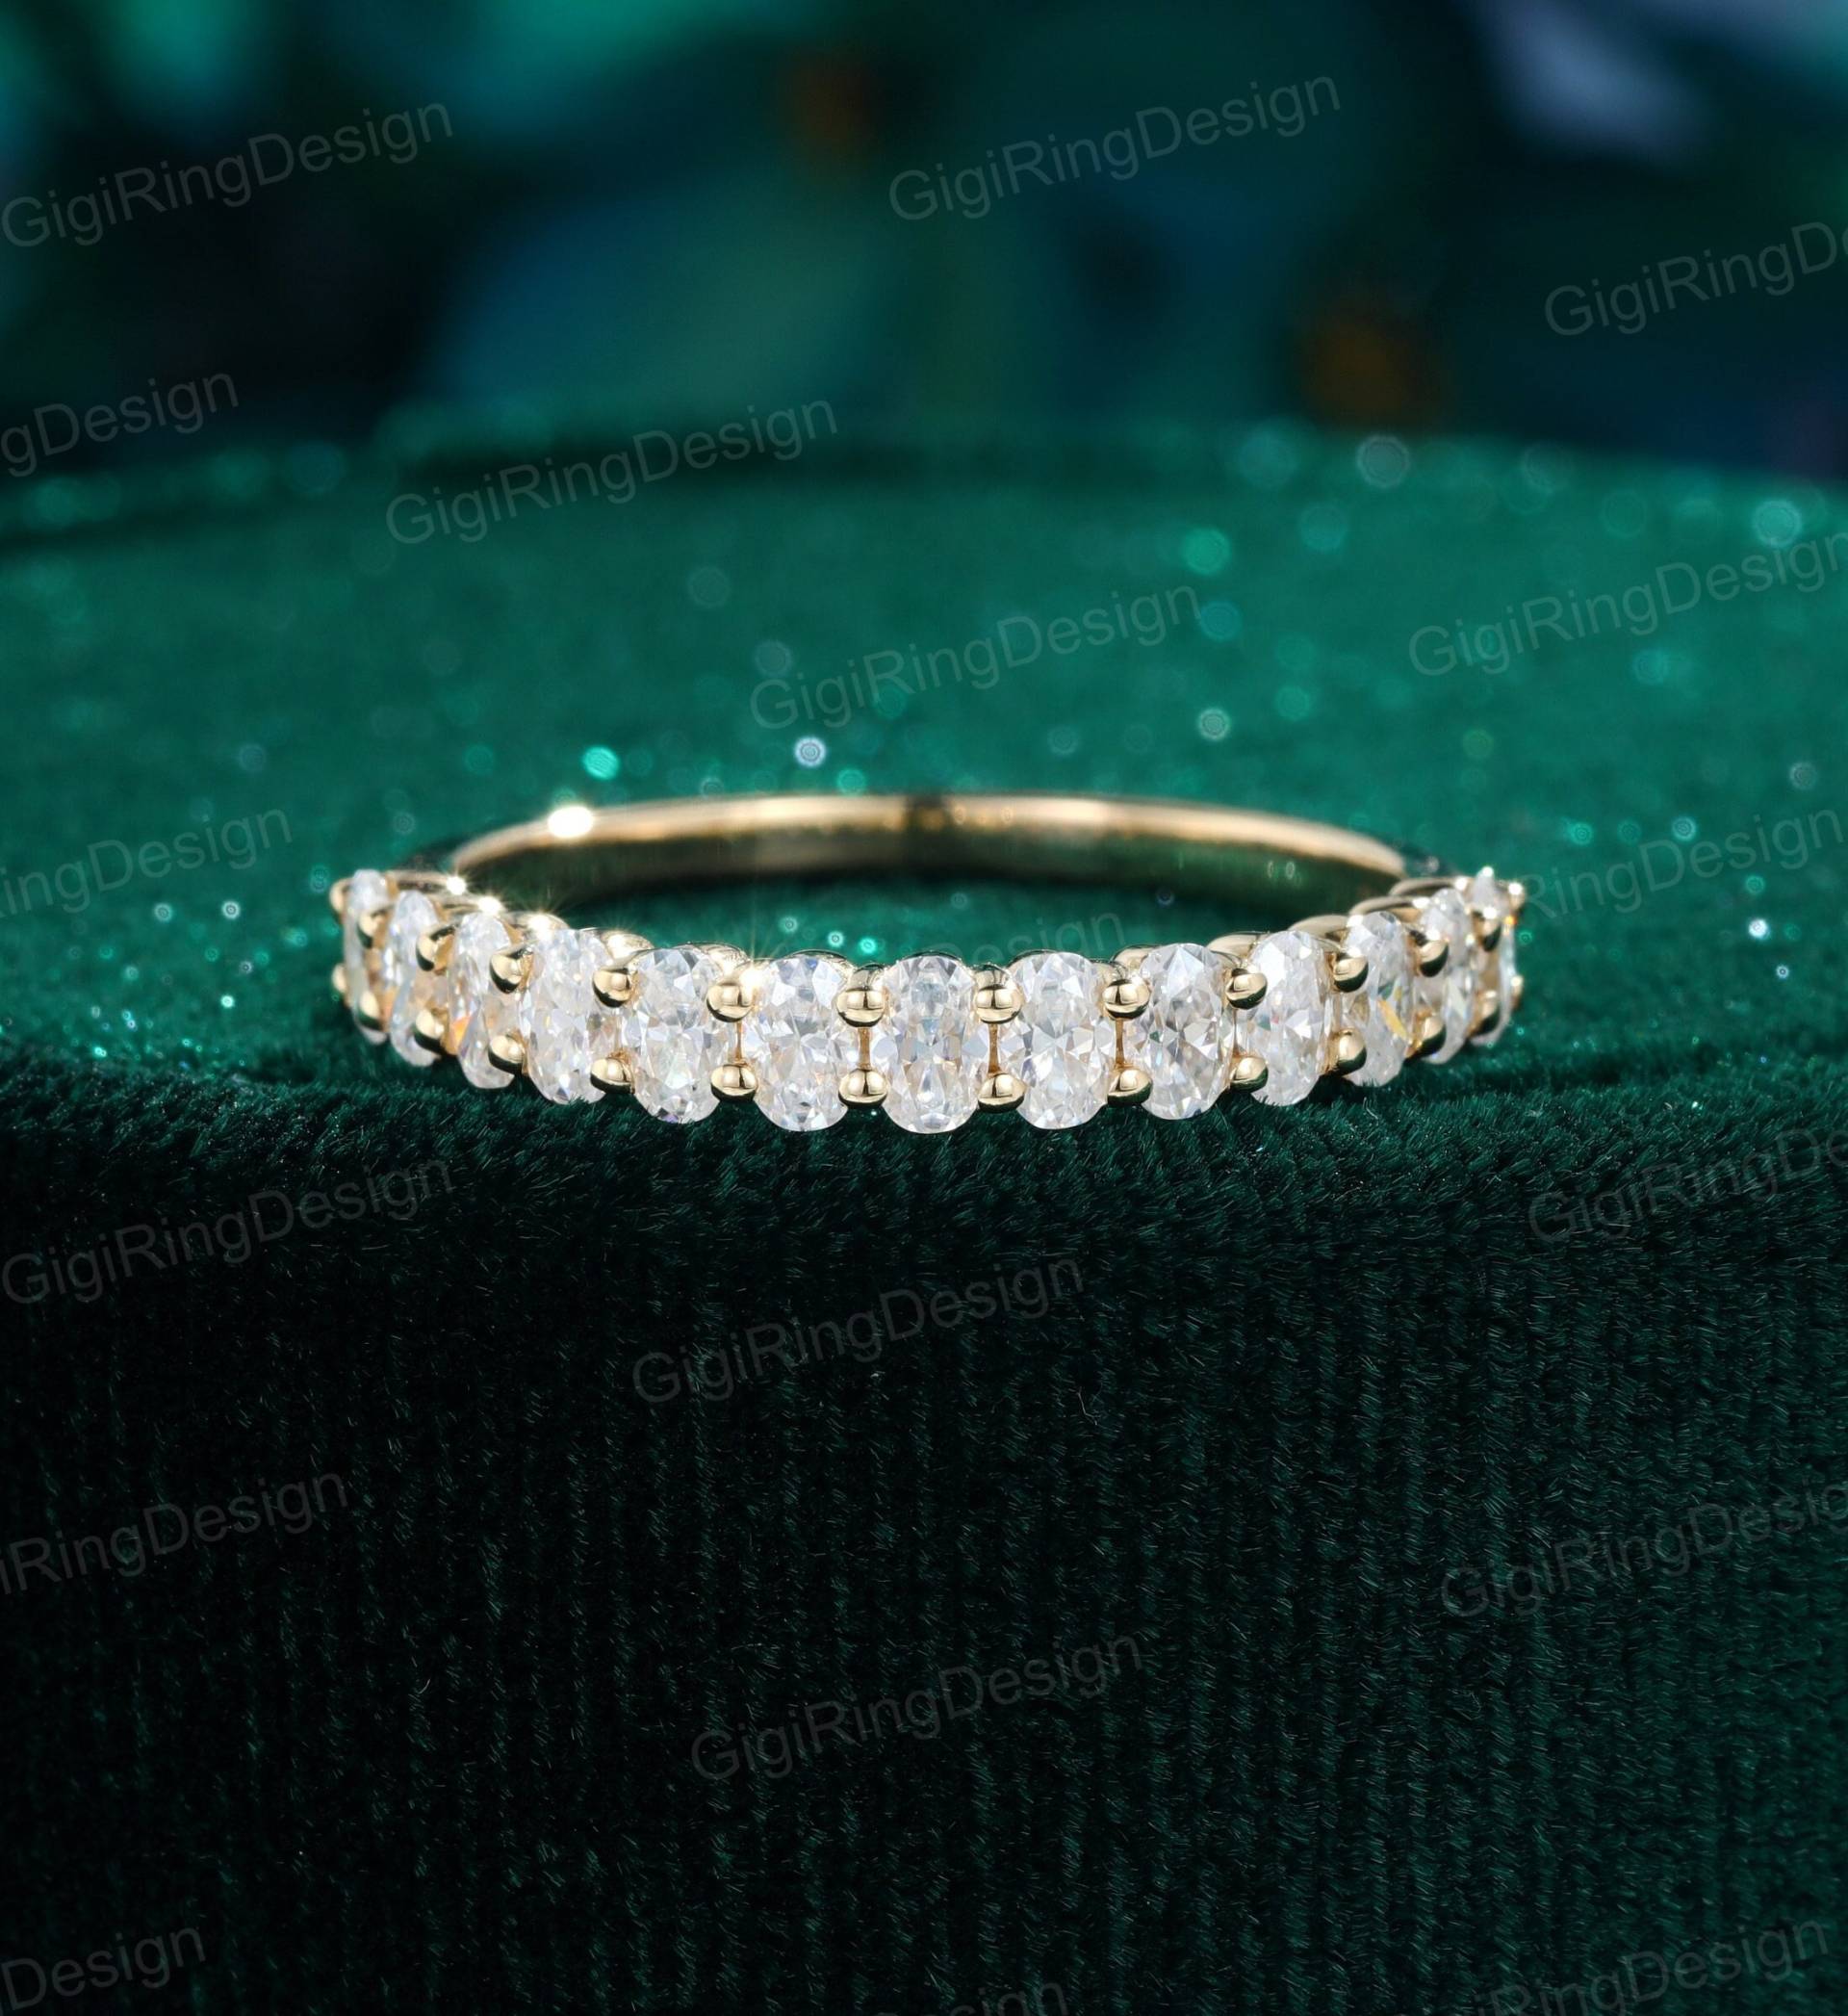 Ovale Moissanit Ehering Damen Ring Unikat Gelbgold Zarte Braut Stapelring Jahrestag Für Sie von GigiRingDesign